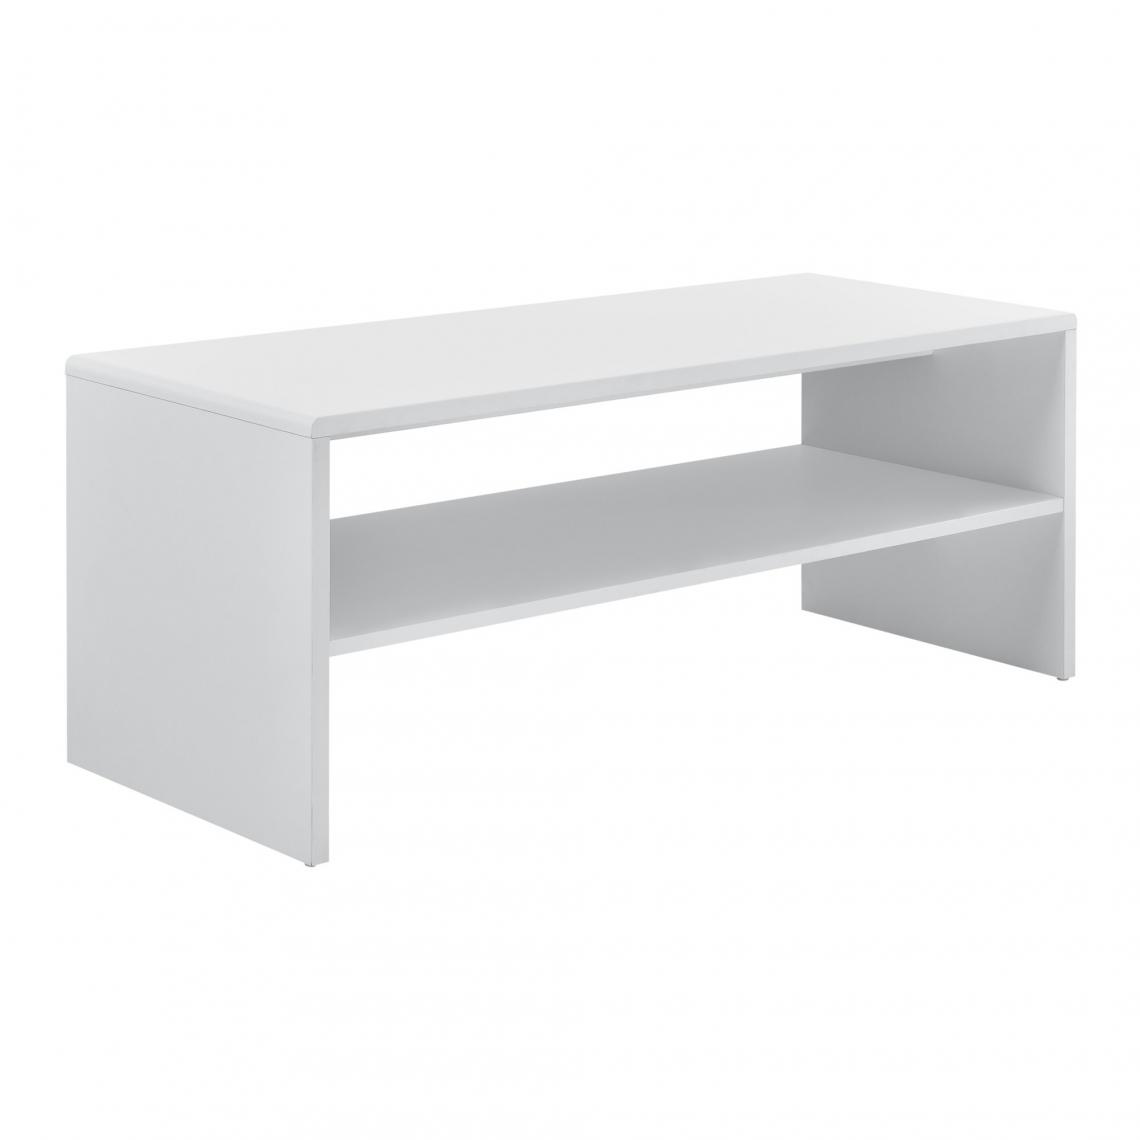 Helloshop26 - Table basse de salon avec rangement panneau de fibre de bois 100 cm blanc 03_0004130 - Tables basses